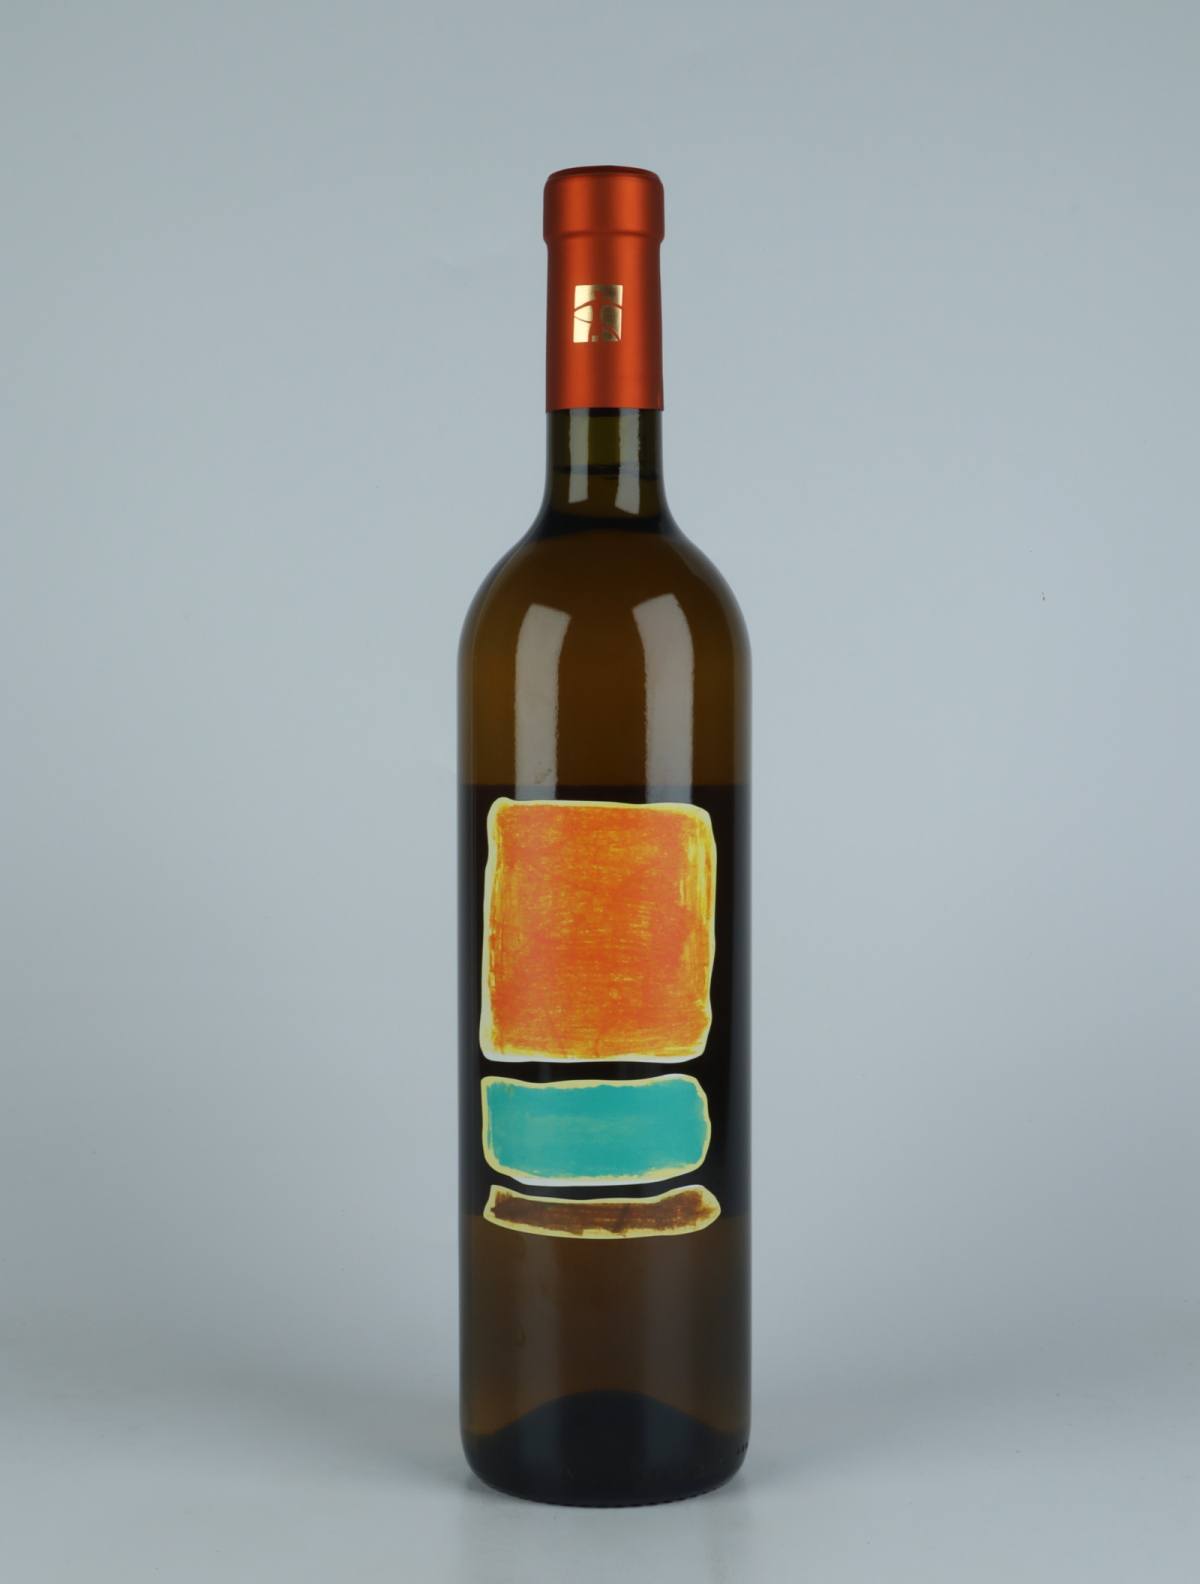 A bottle 2020 Rucantù Orange wine from Tenuta Selvadolce, Liguria in Italy